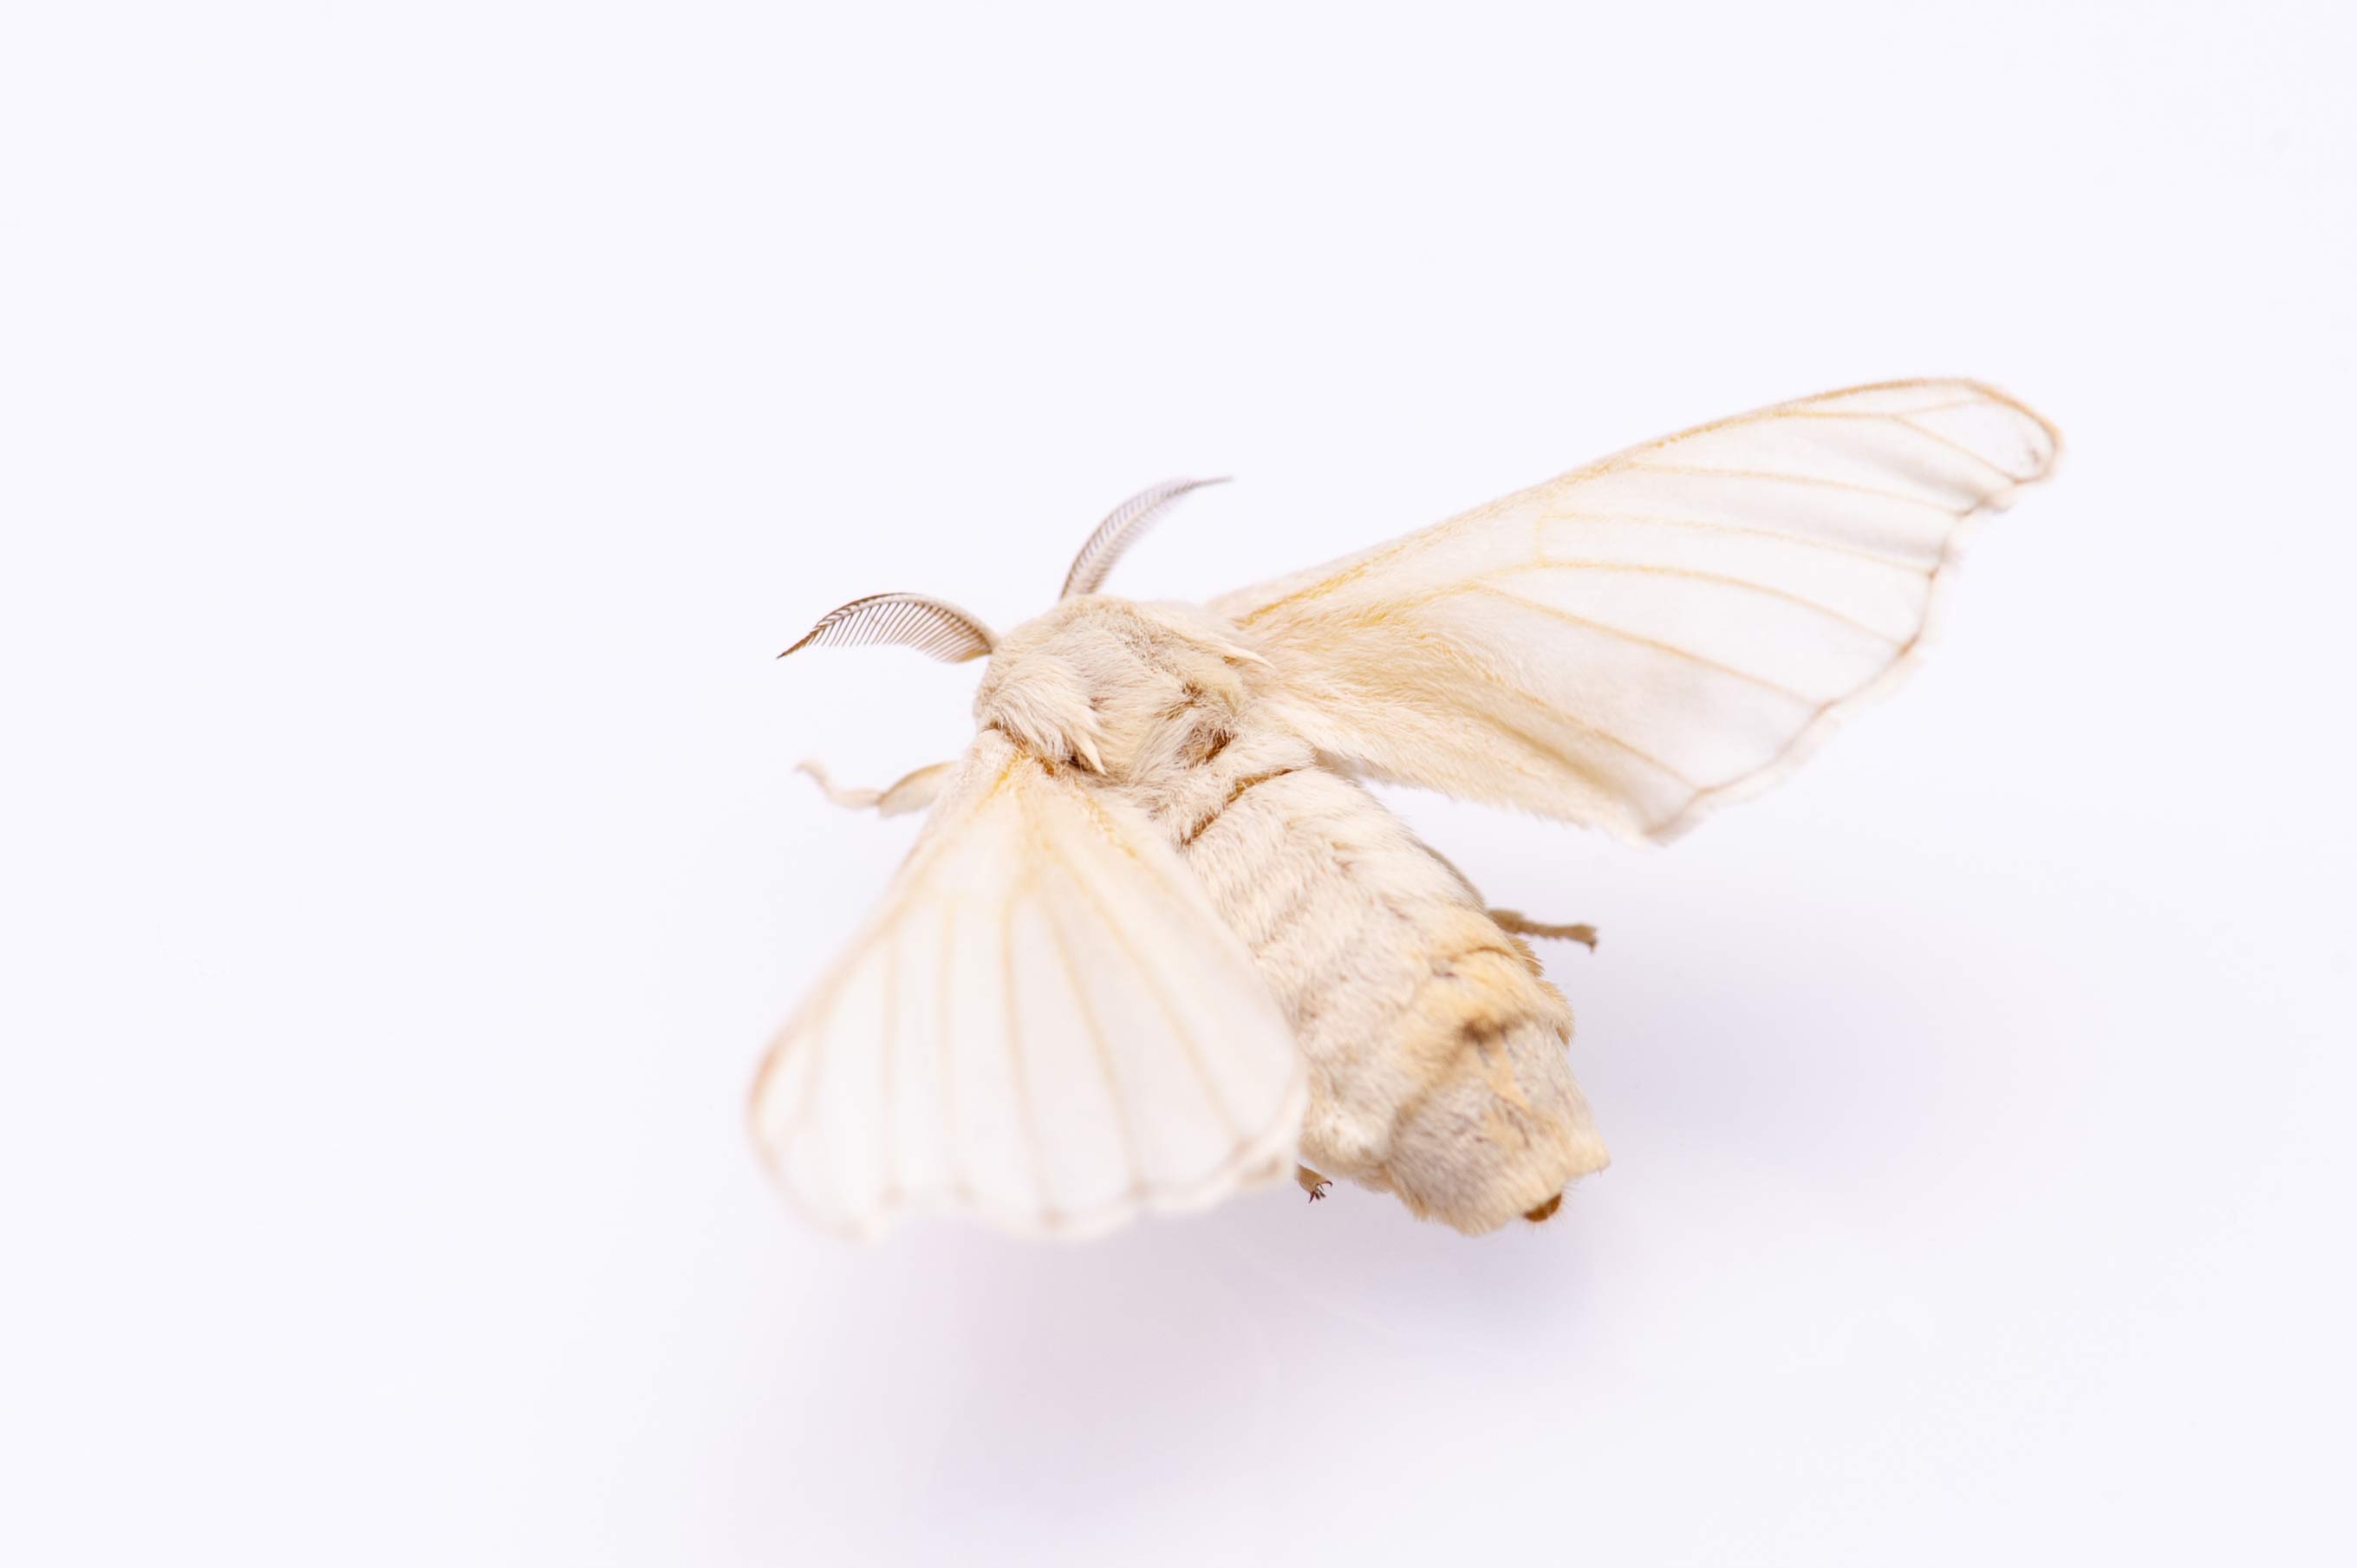 カイコ | 虫の写真と生態なら昆虫写真図鑑「ムシミル」